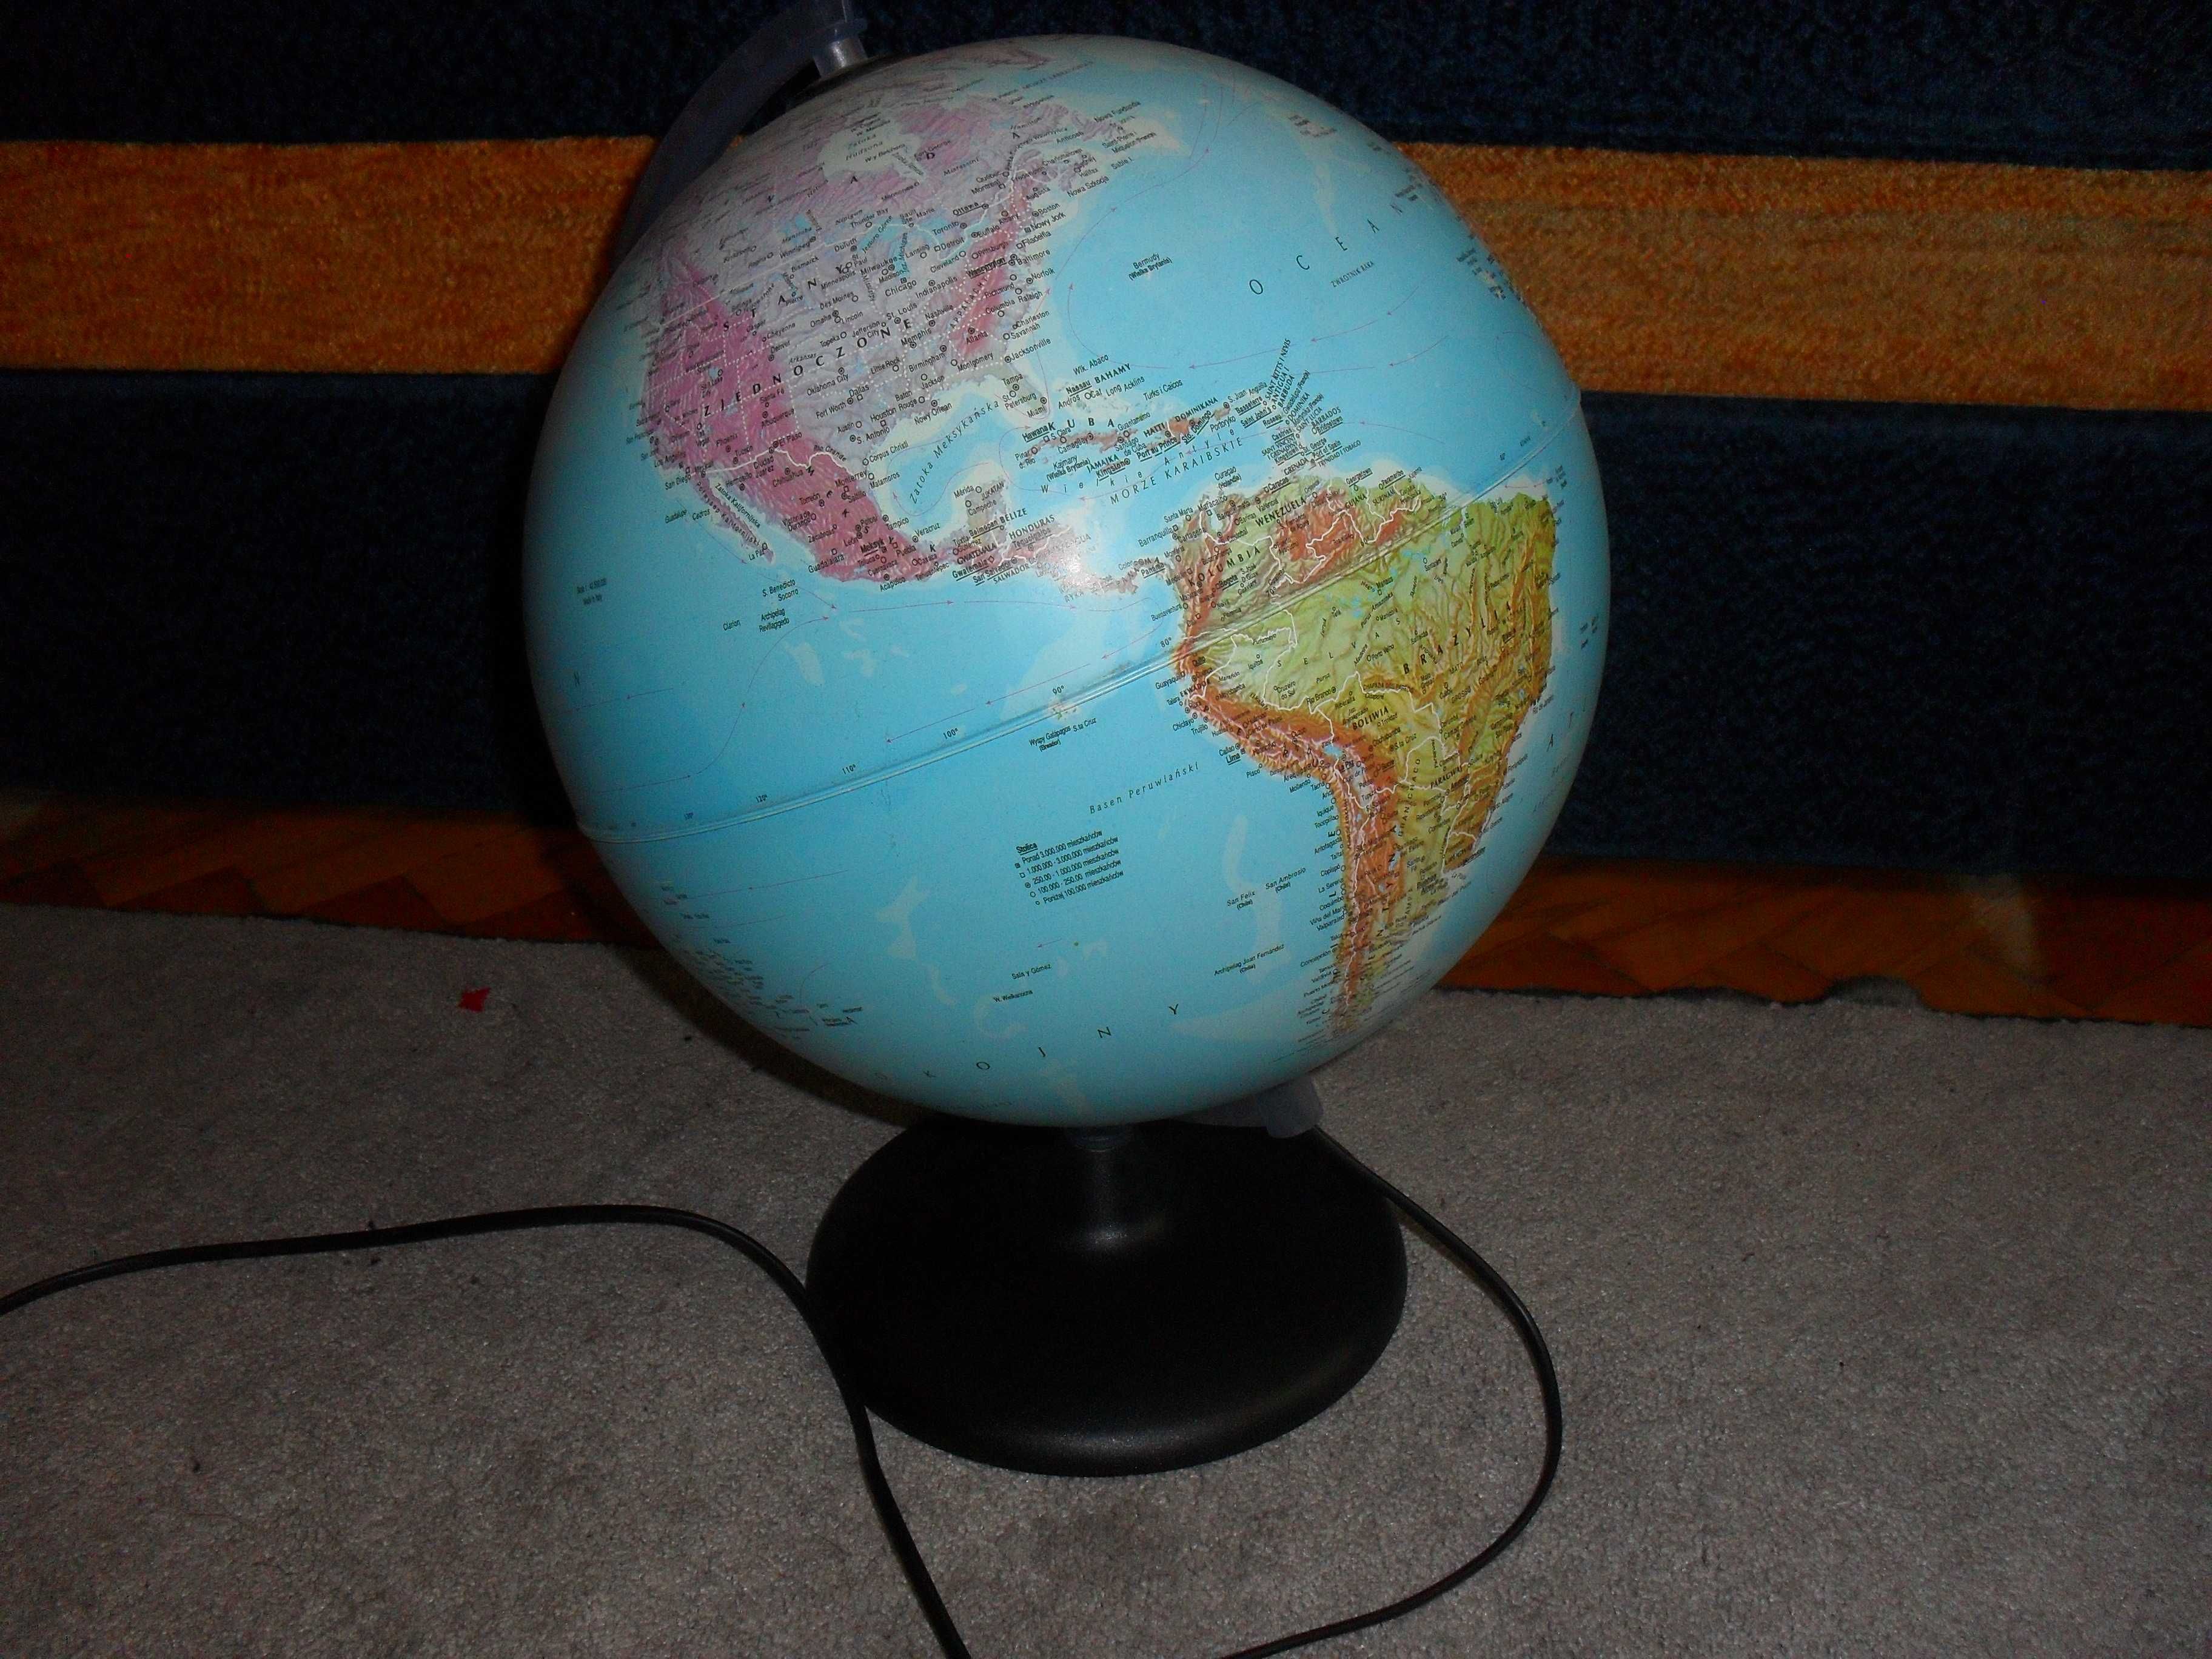 Globus podświetlany wysokość 40cm.